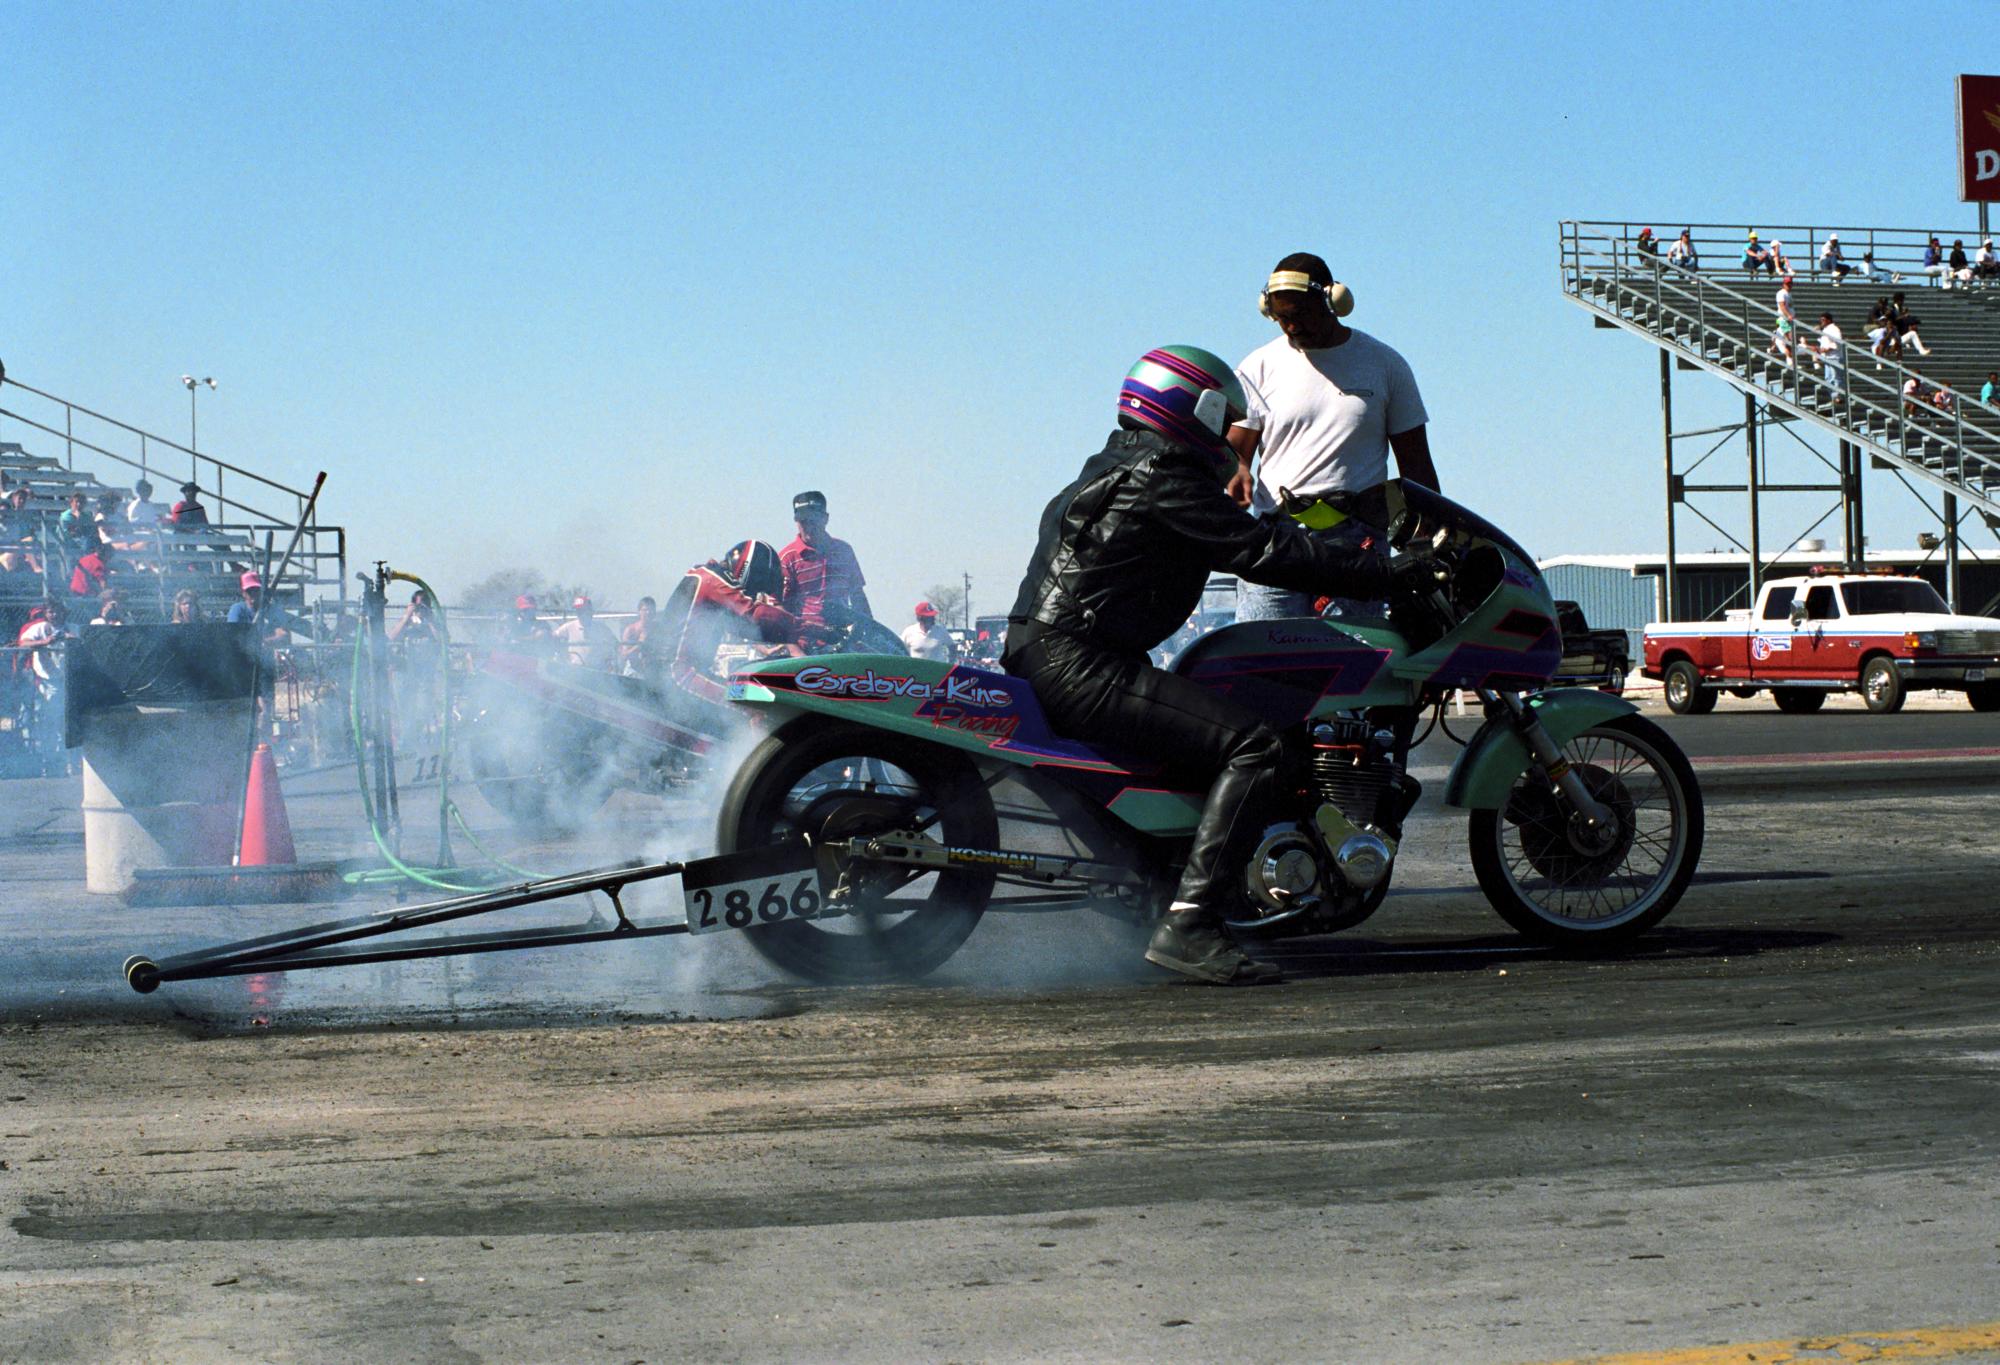 Texas Motor Drag Racing (1991) - Drag Racing Warm Up #3